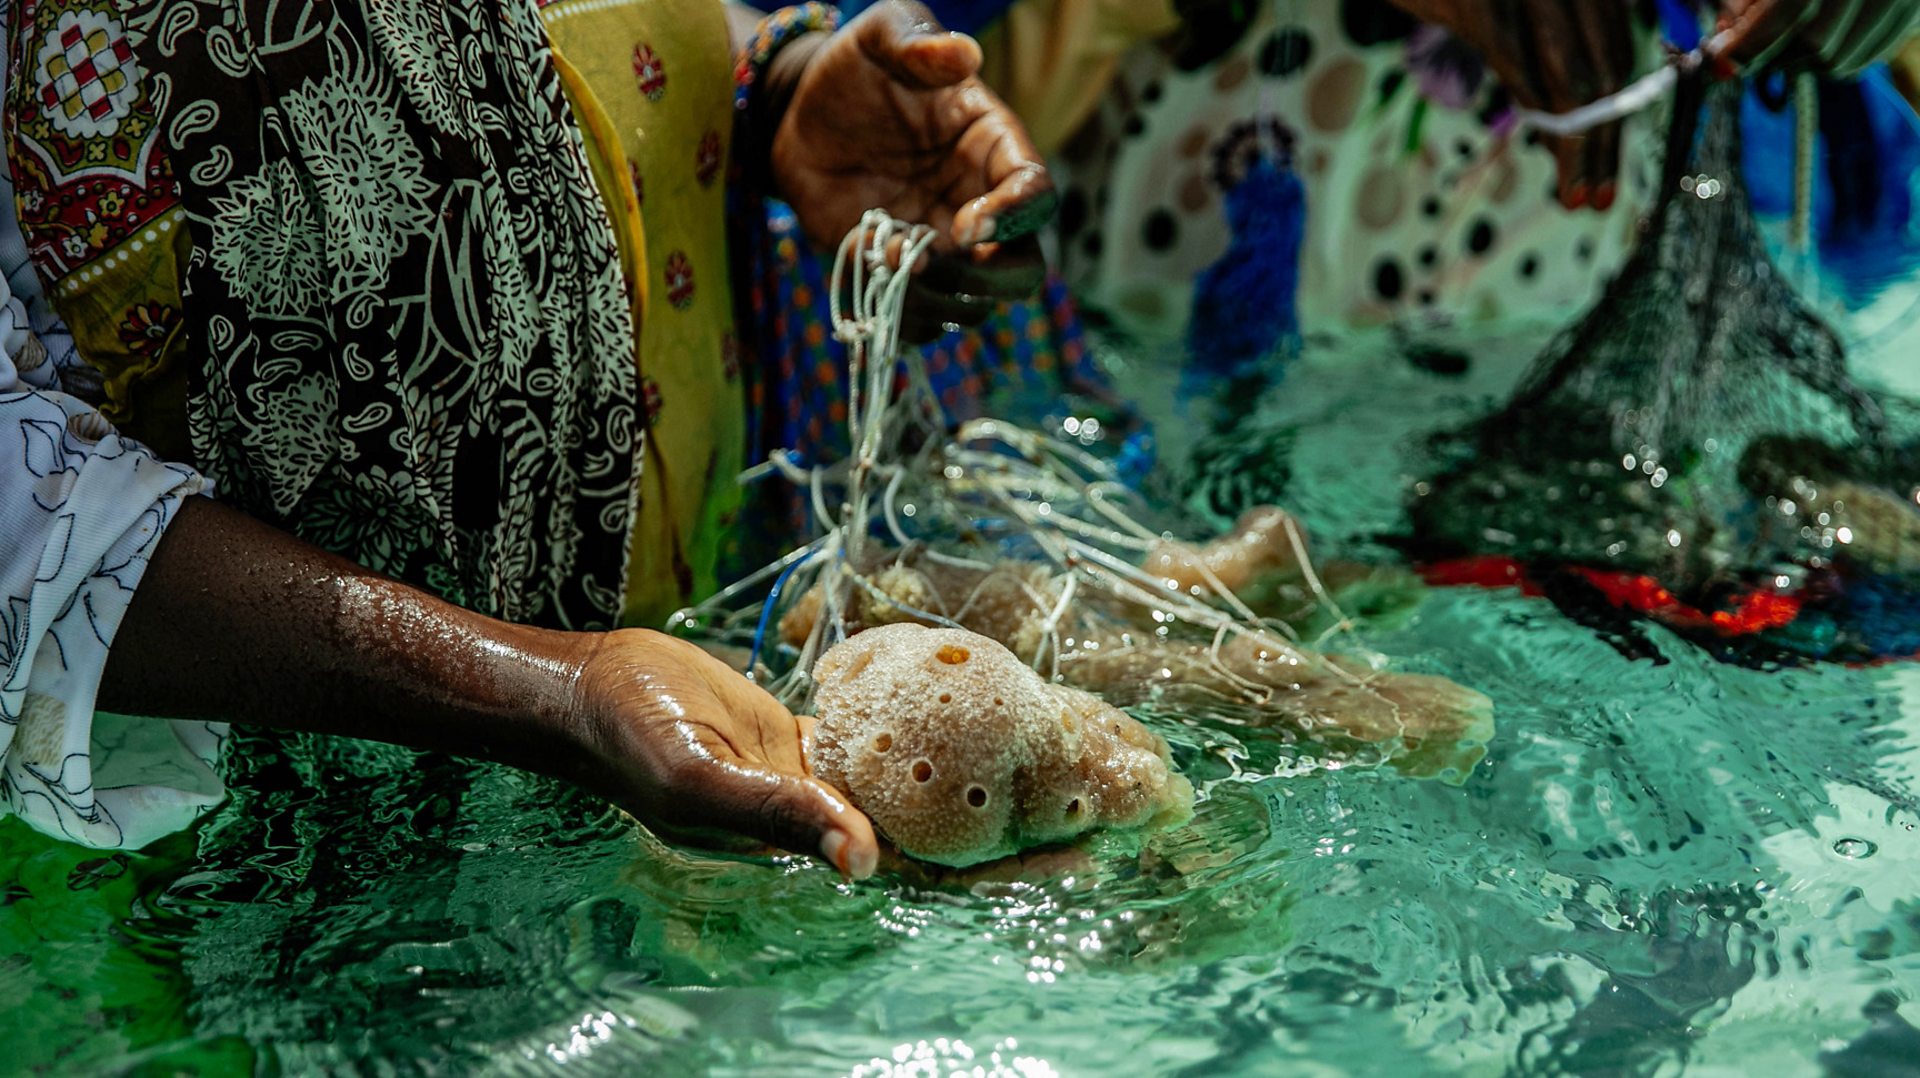 The spongy creatures cleaning Zanzibar's oceans